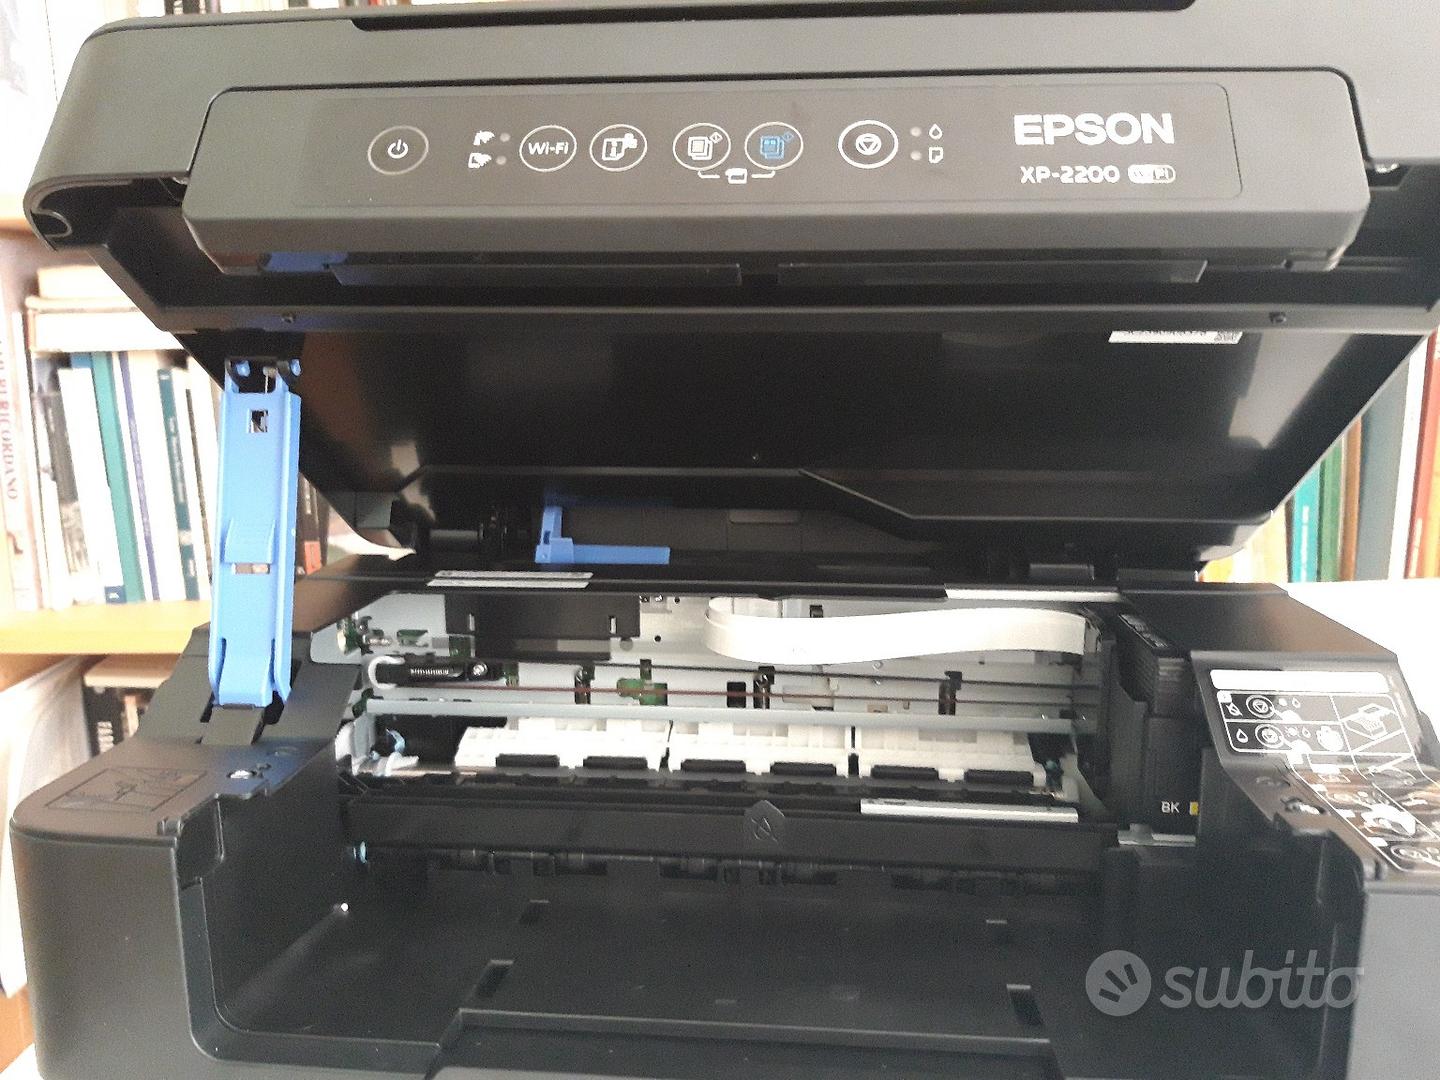 Stampante EPSON XP-2200 - Informatica In vendita a Roma